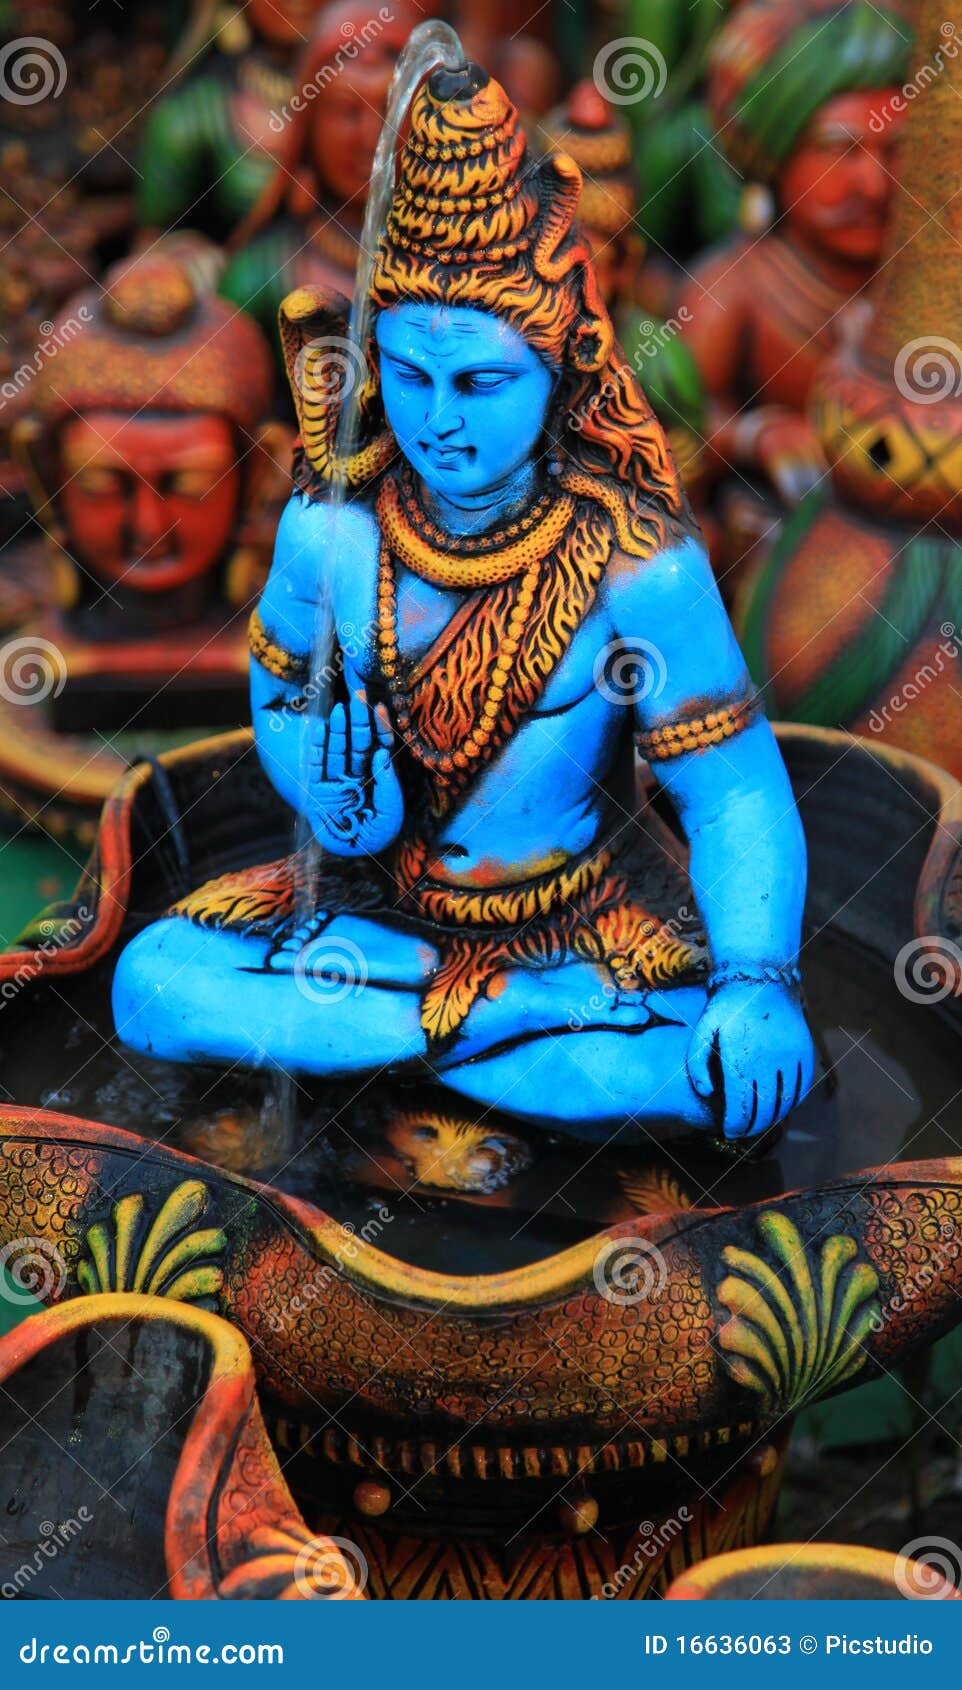 Lord shiva stock image. Image of indian, mythological - 16636063